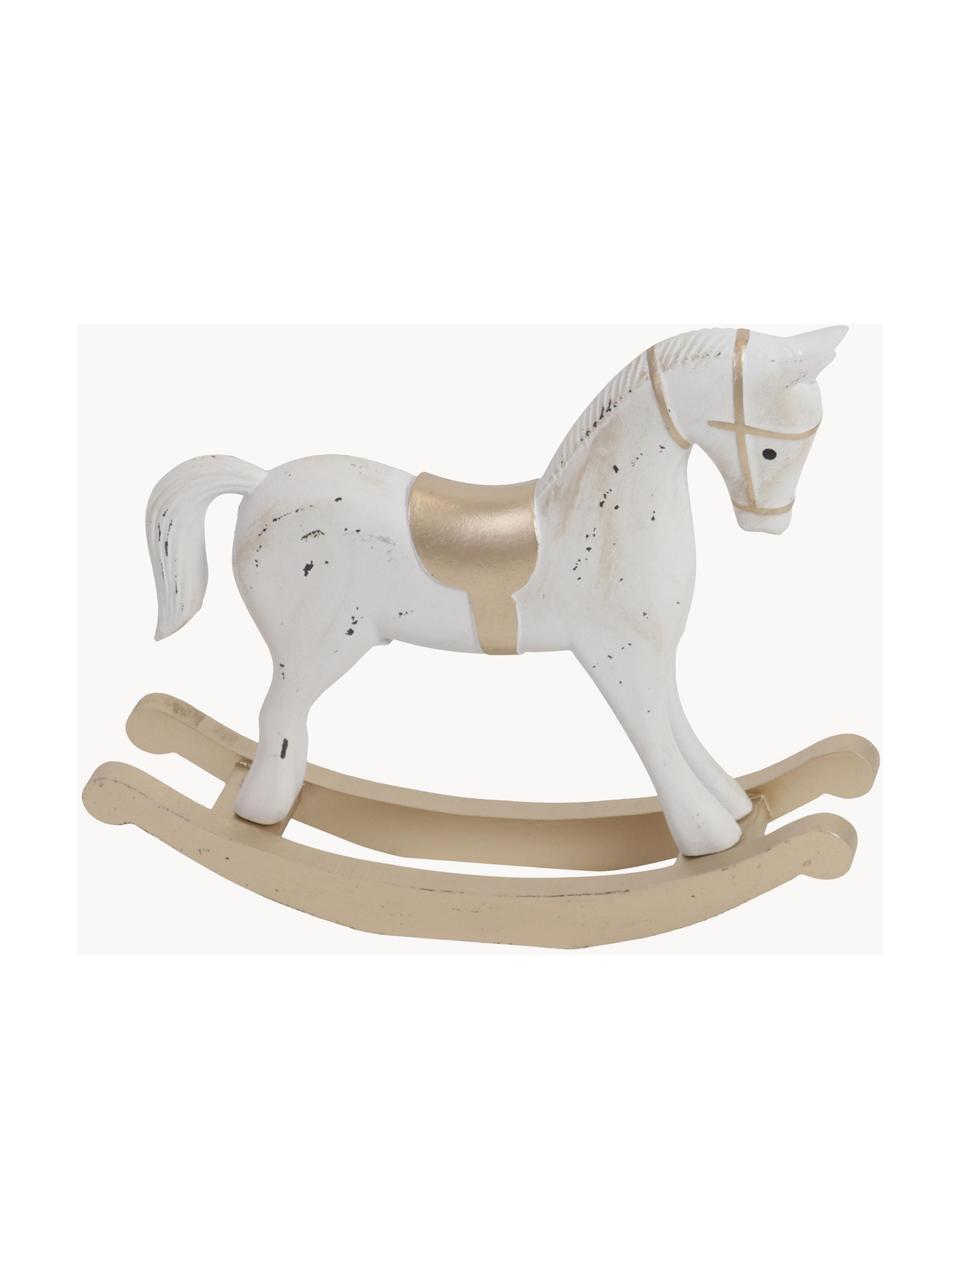 Oggetto decorativo Horse, Pannello di fibra a media densità, rivestito, Bianco, beige, dorato, Larg. 38 x Alt. 32 cm